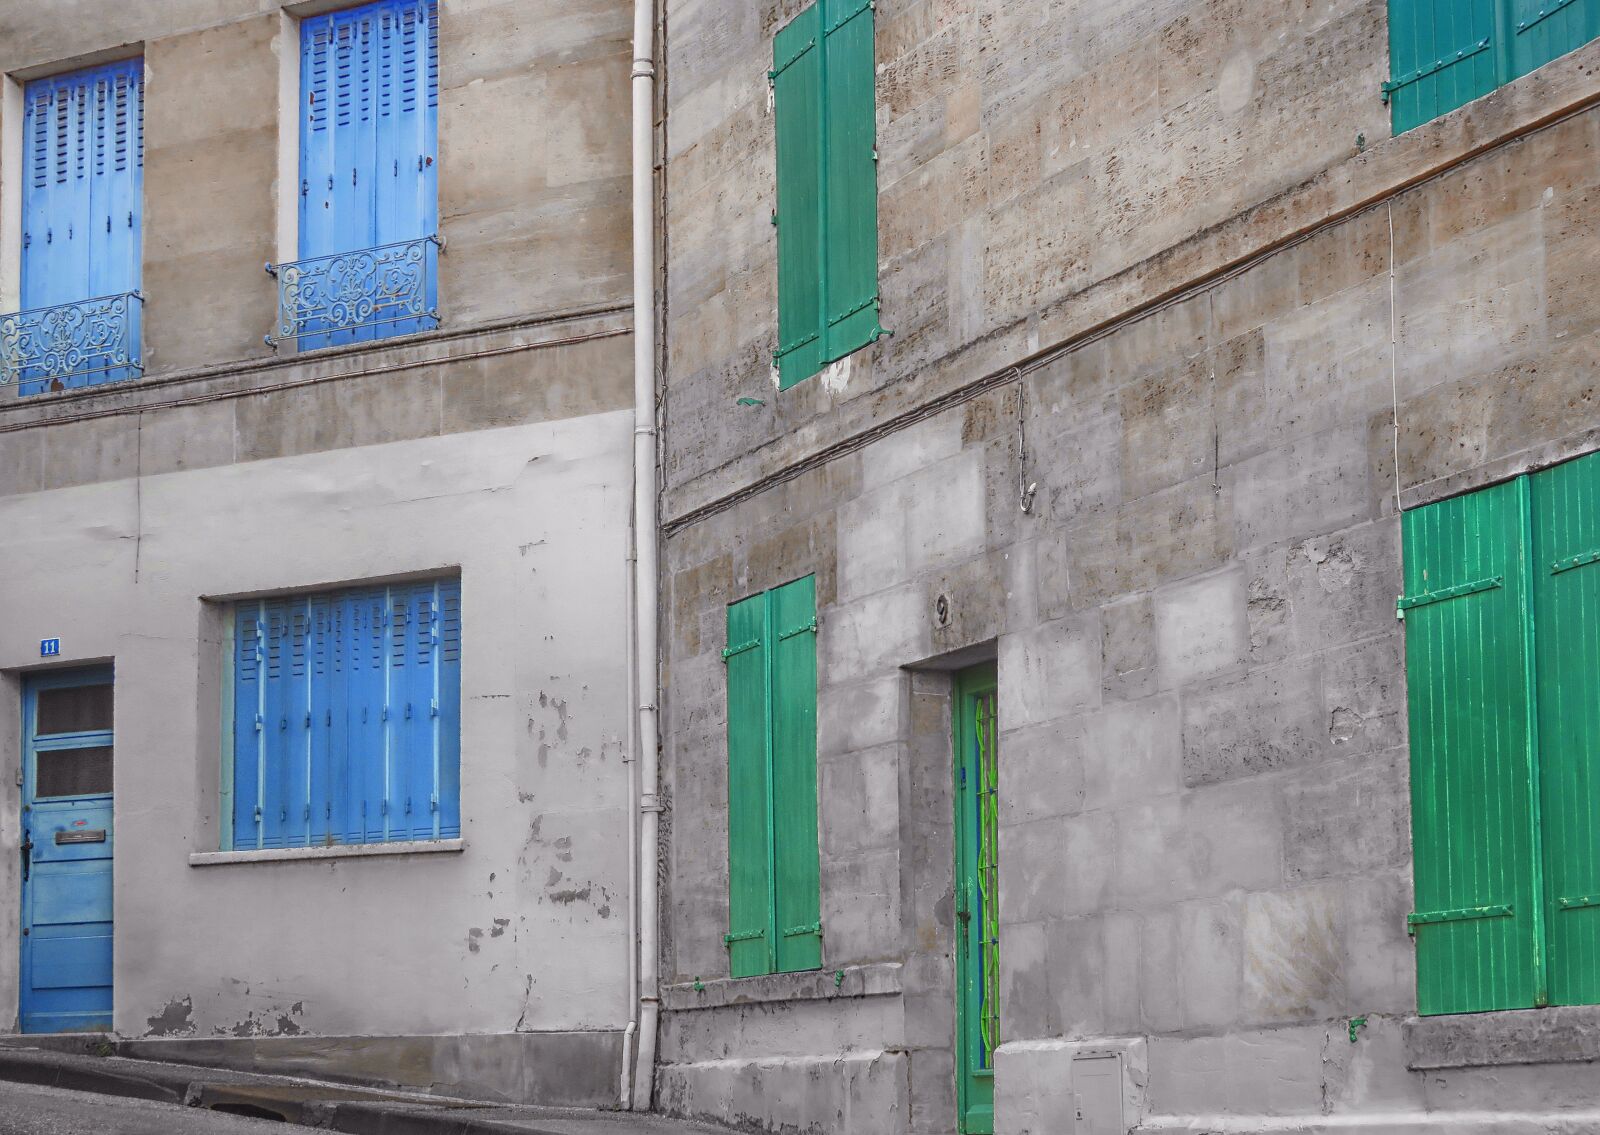 Canon PowerShot SX730 HS sample photo. Facade, window, house facade photography